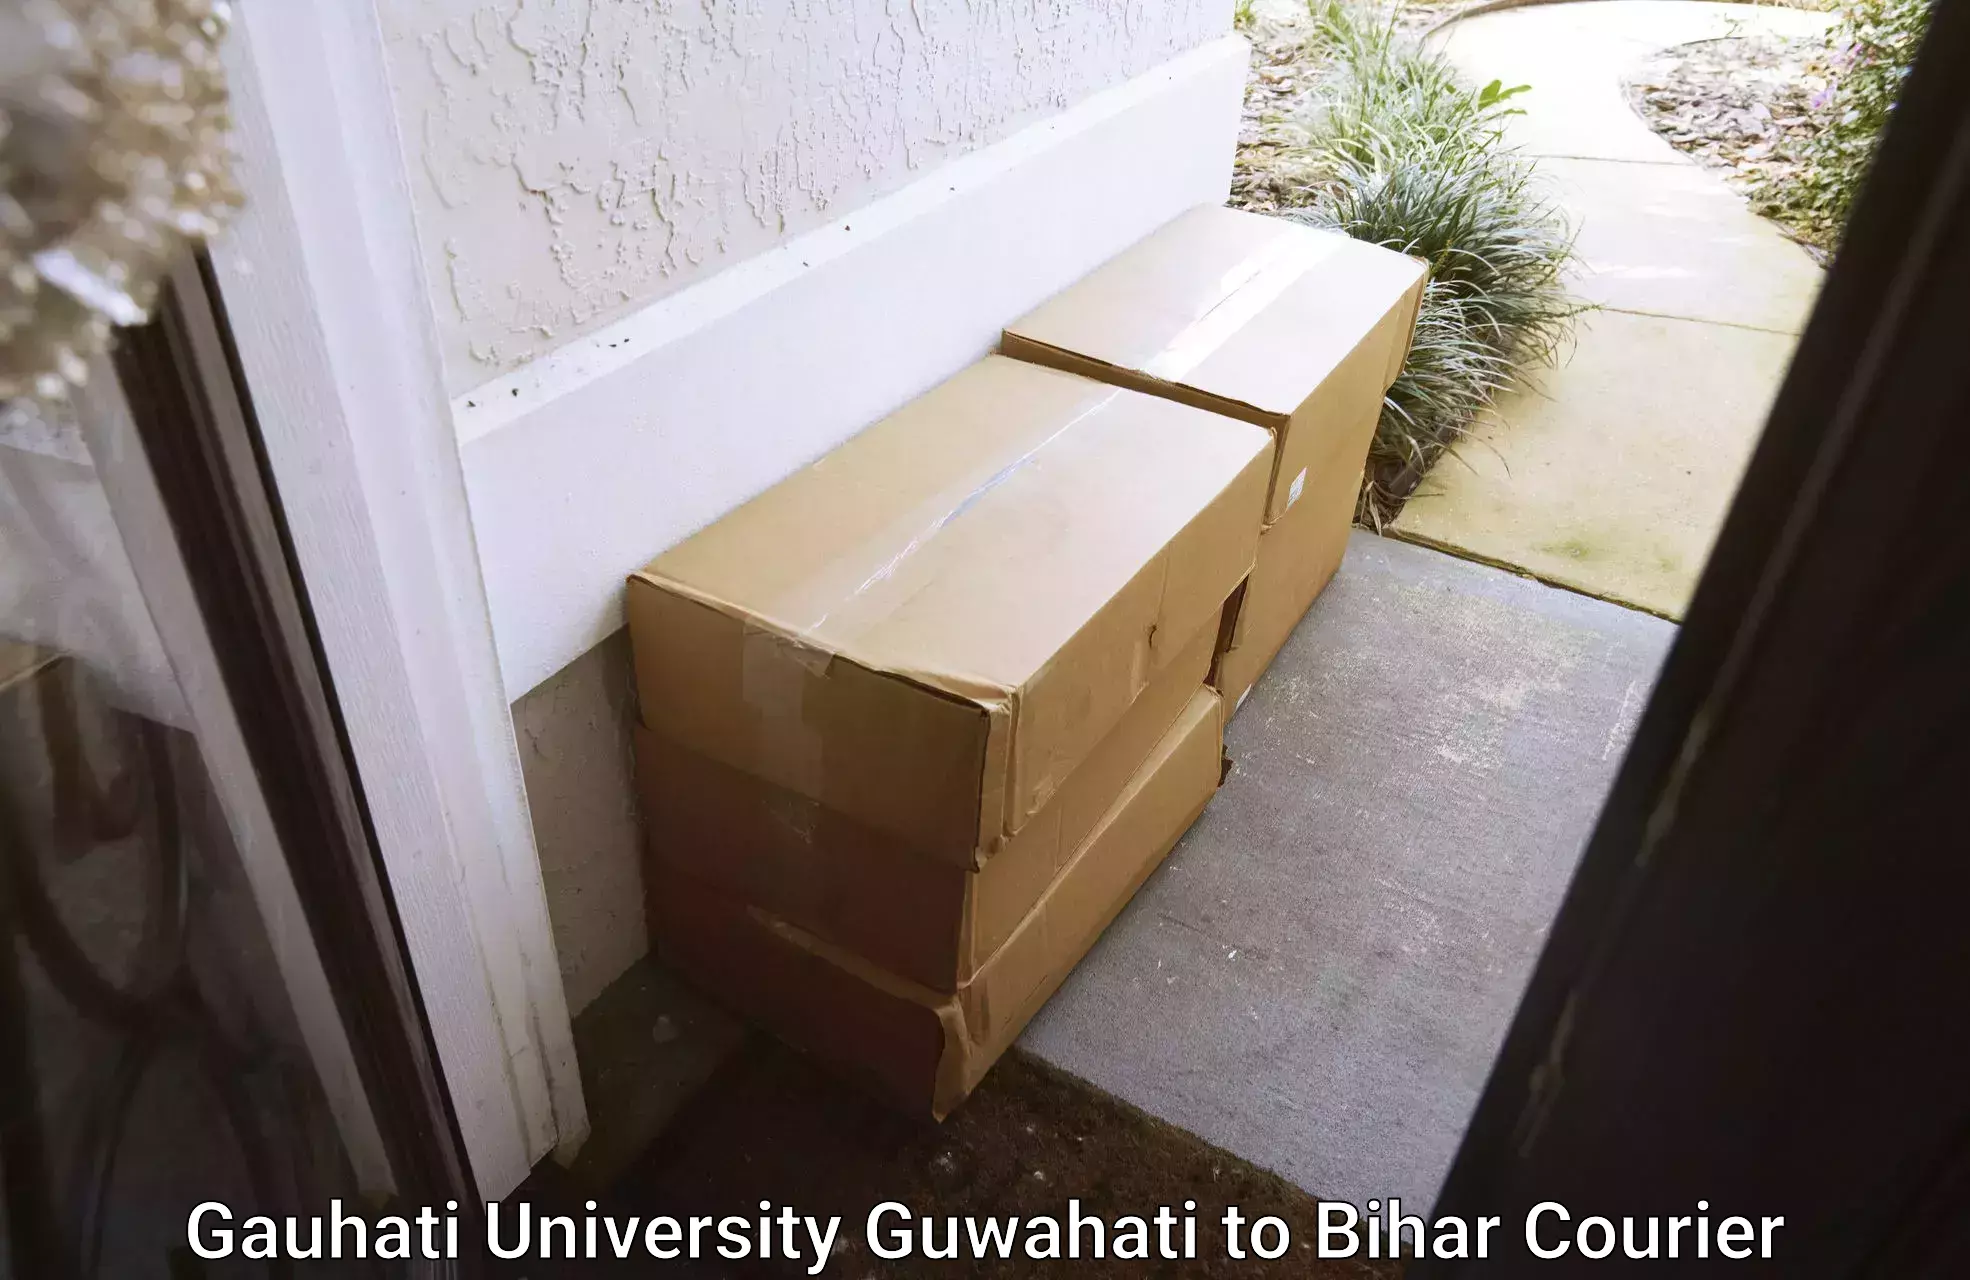 Lightweight courier Gauhati University Guwahati to Hasanpura